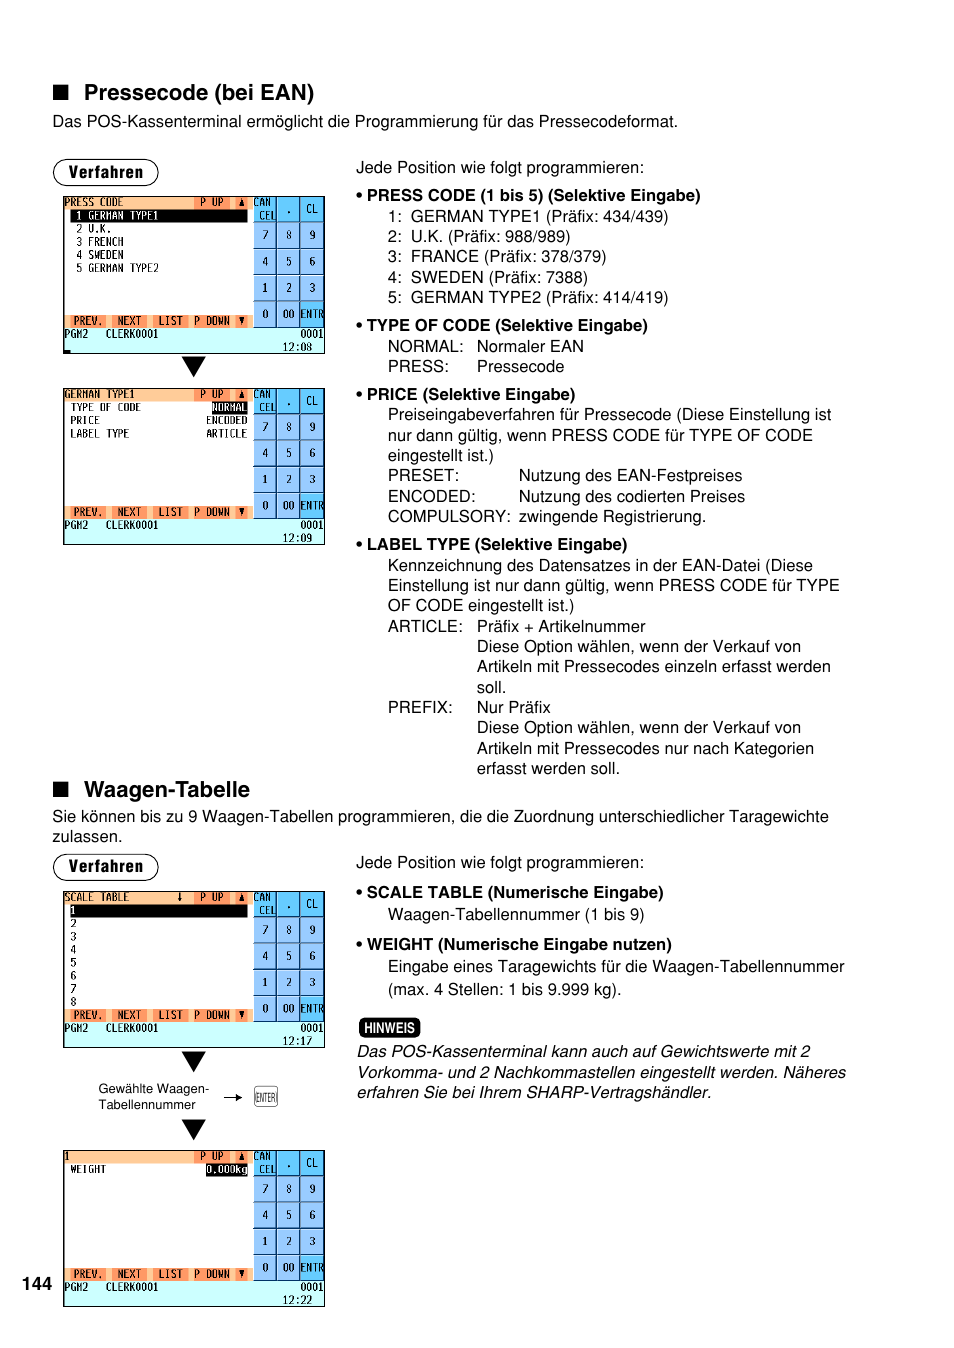 Pressecode (bei ean), Waagen-tabelle | Sharp UP-820N Benutzerhandbuch | Seite 146 / 242